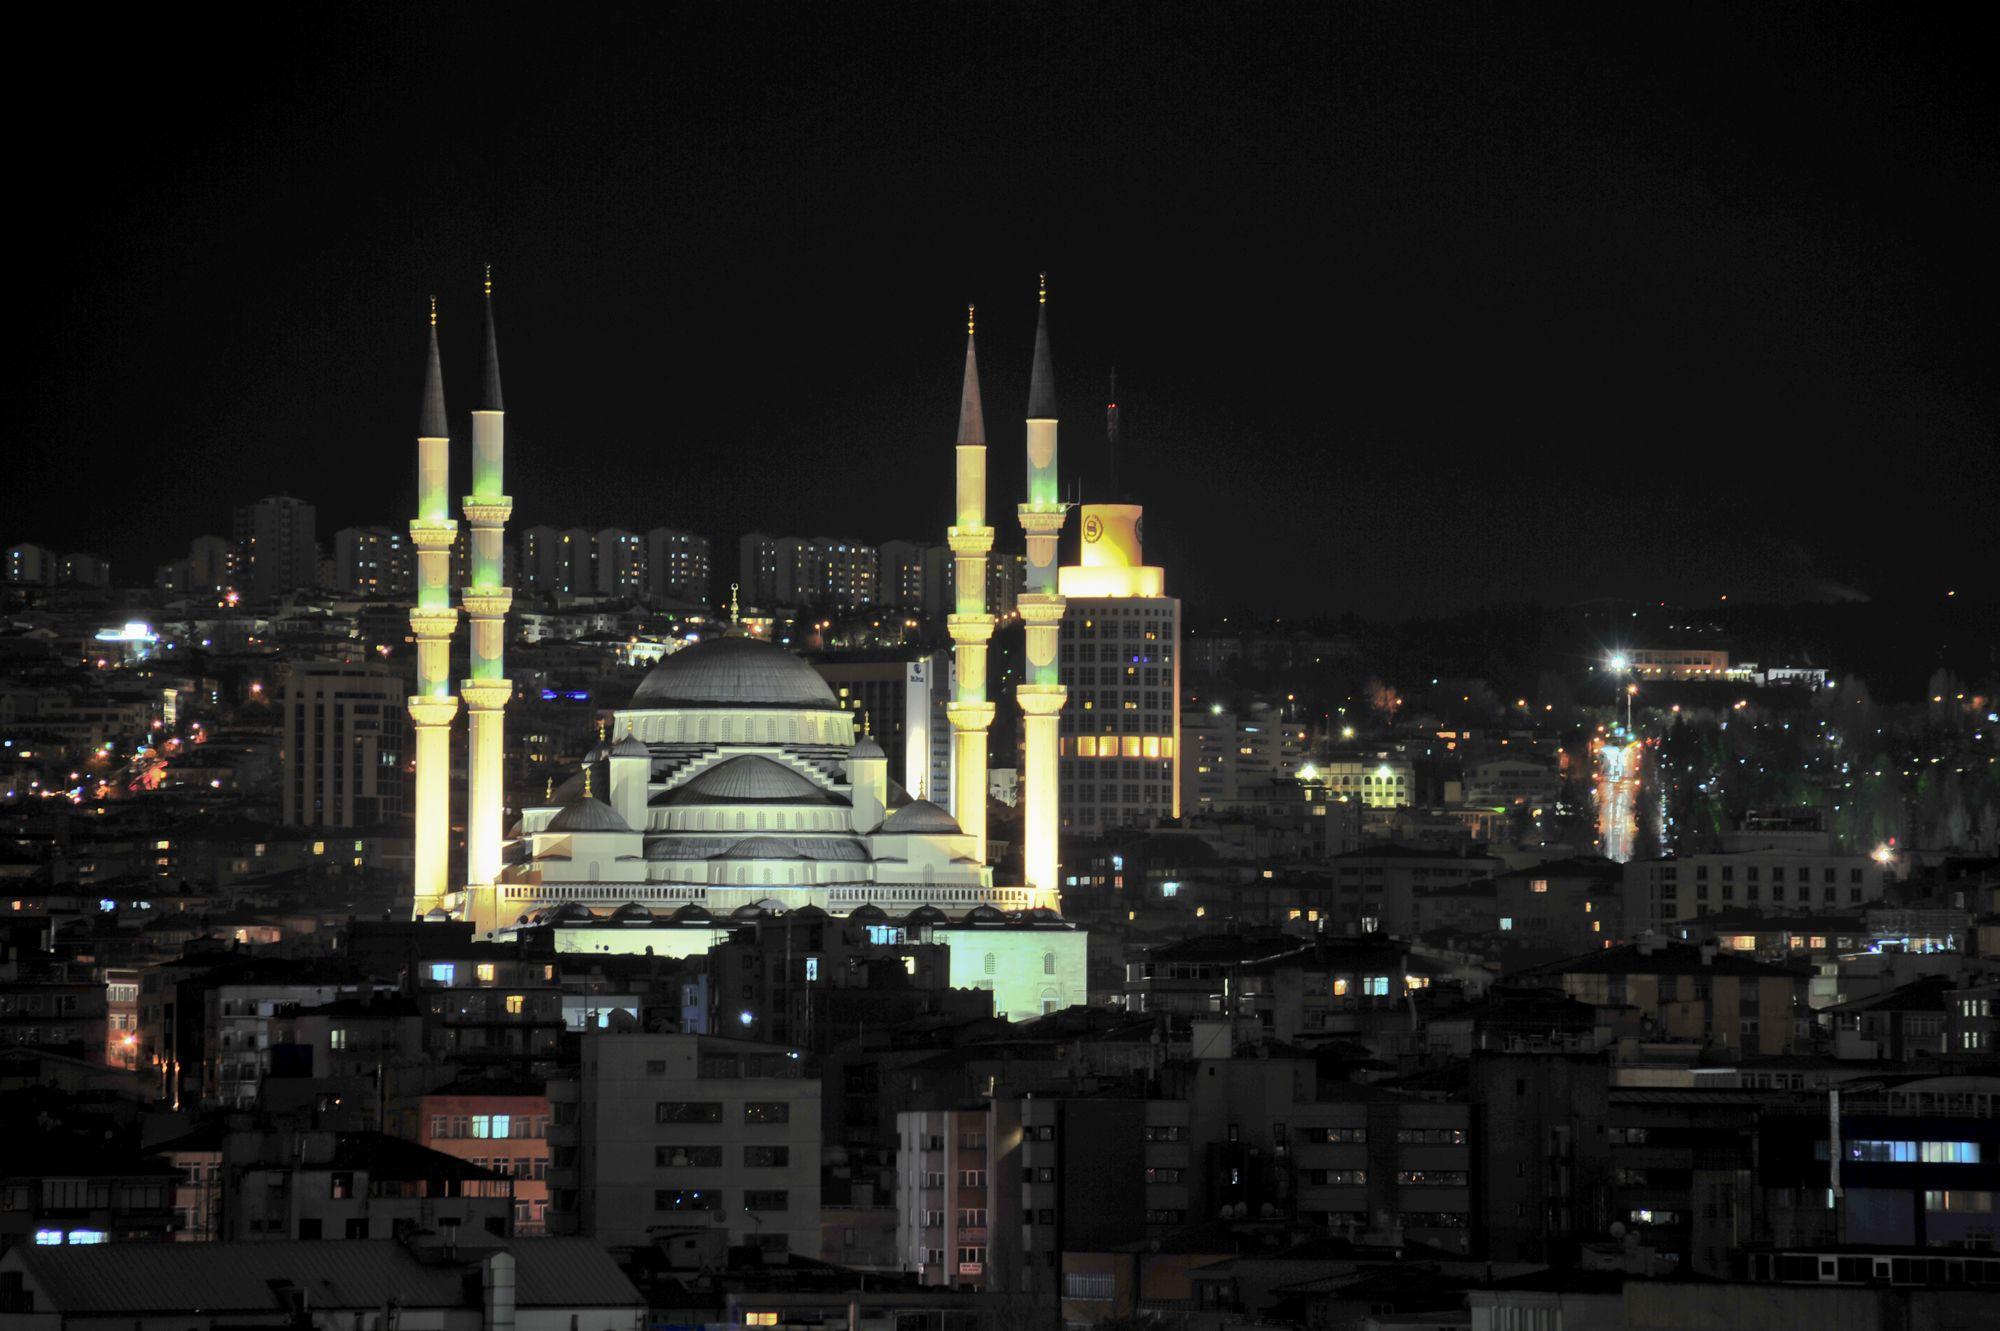 İç anadolunun en önemli şehri ve başkenti Ankara`nın resimleri